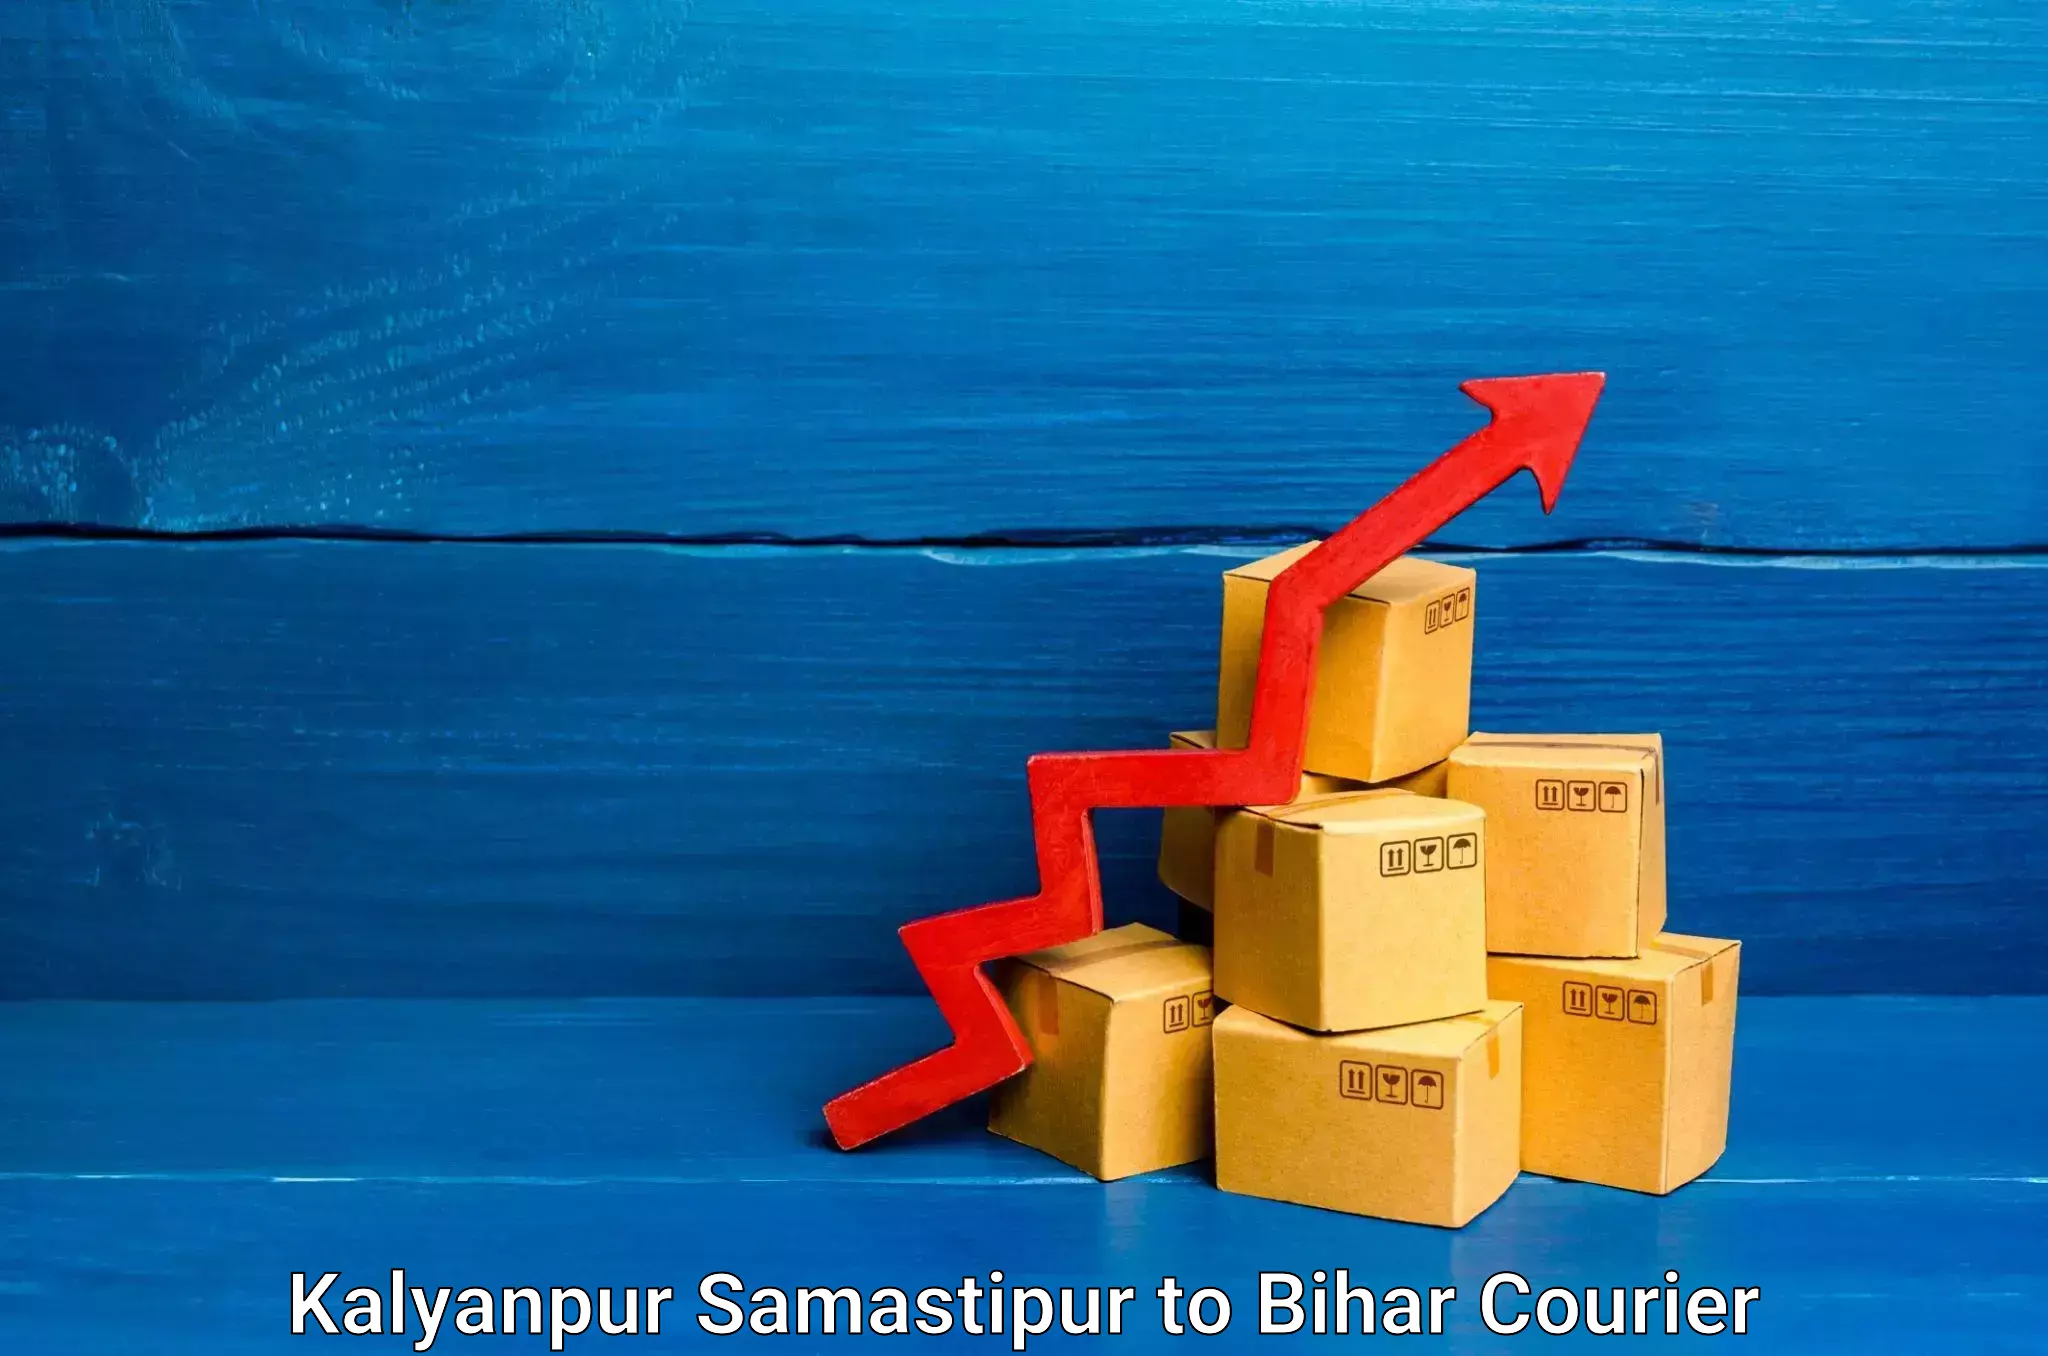 Furniture moving assistance Kalyanpur Samastipur to Bihar